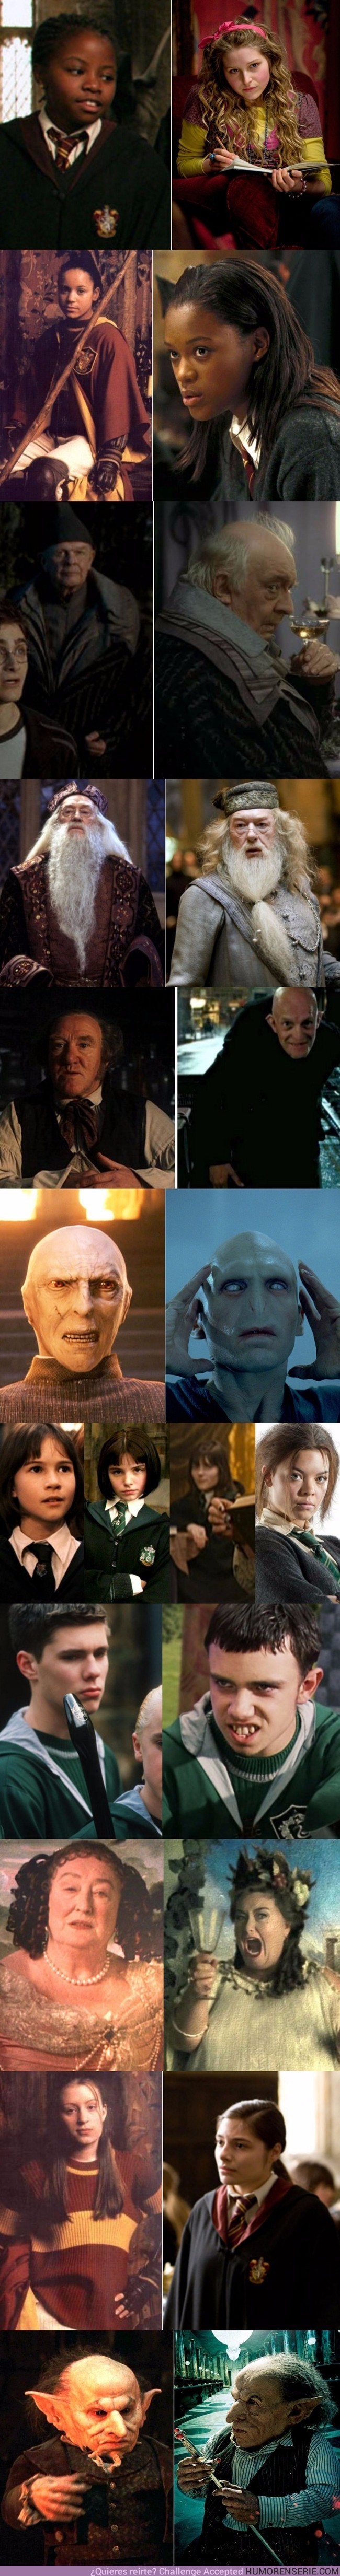 2435 - Personajes de Harry Potter que cambiaron de actor